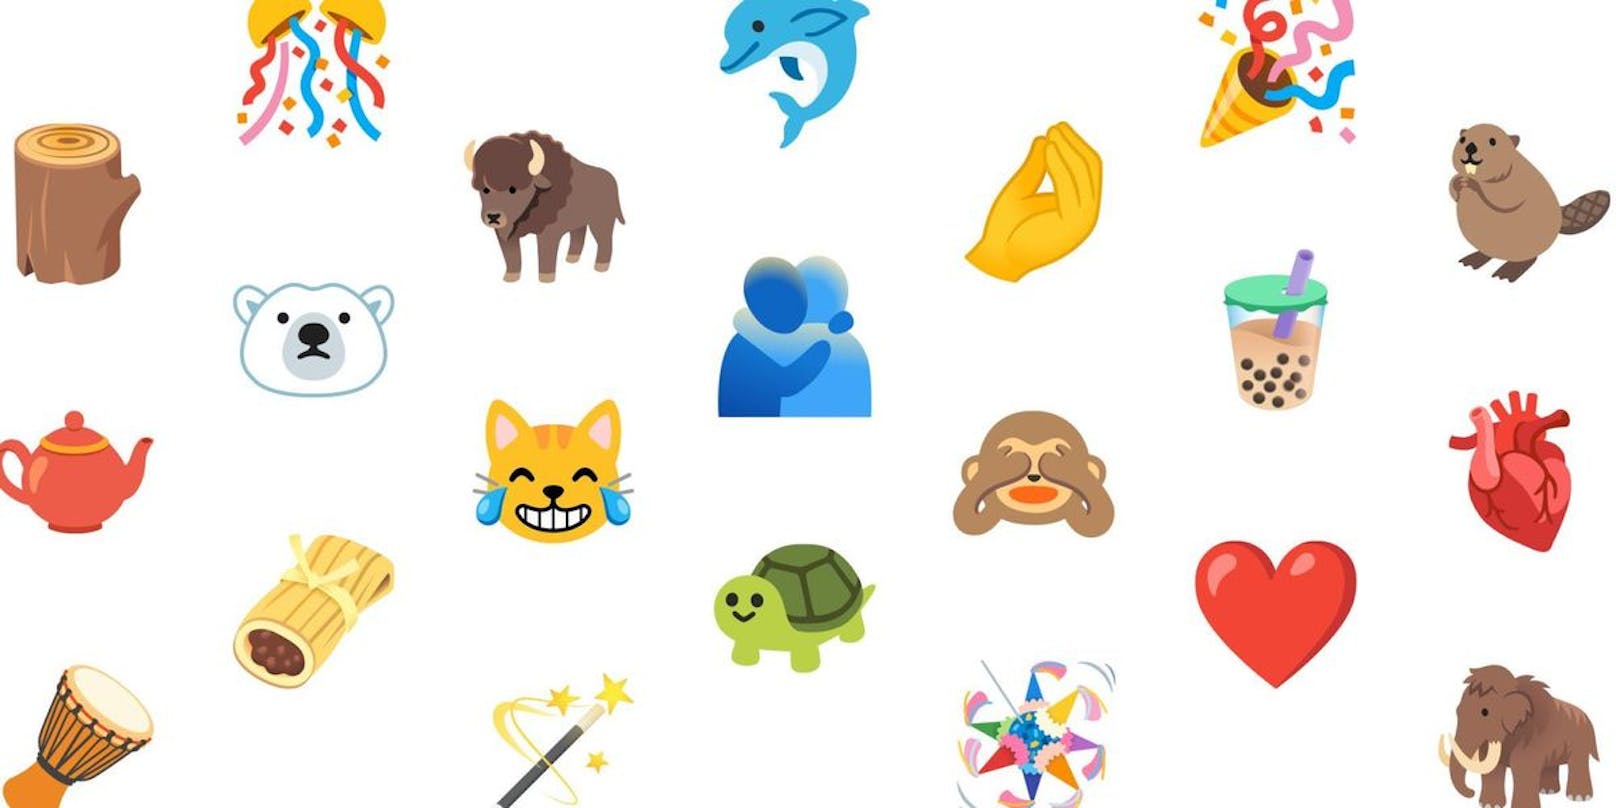 Handy-Nutzer können ab Herbst zahlreiche neue Emojis verschicken. Über 100 neue Bildchen kommen dann mit den neuen Versionen der mobilen Betriebssysteme iOS und Android auf die Geräte.